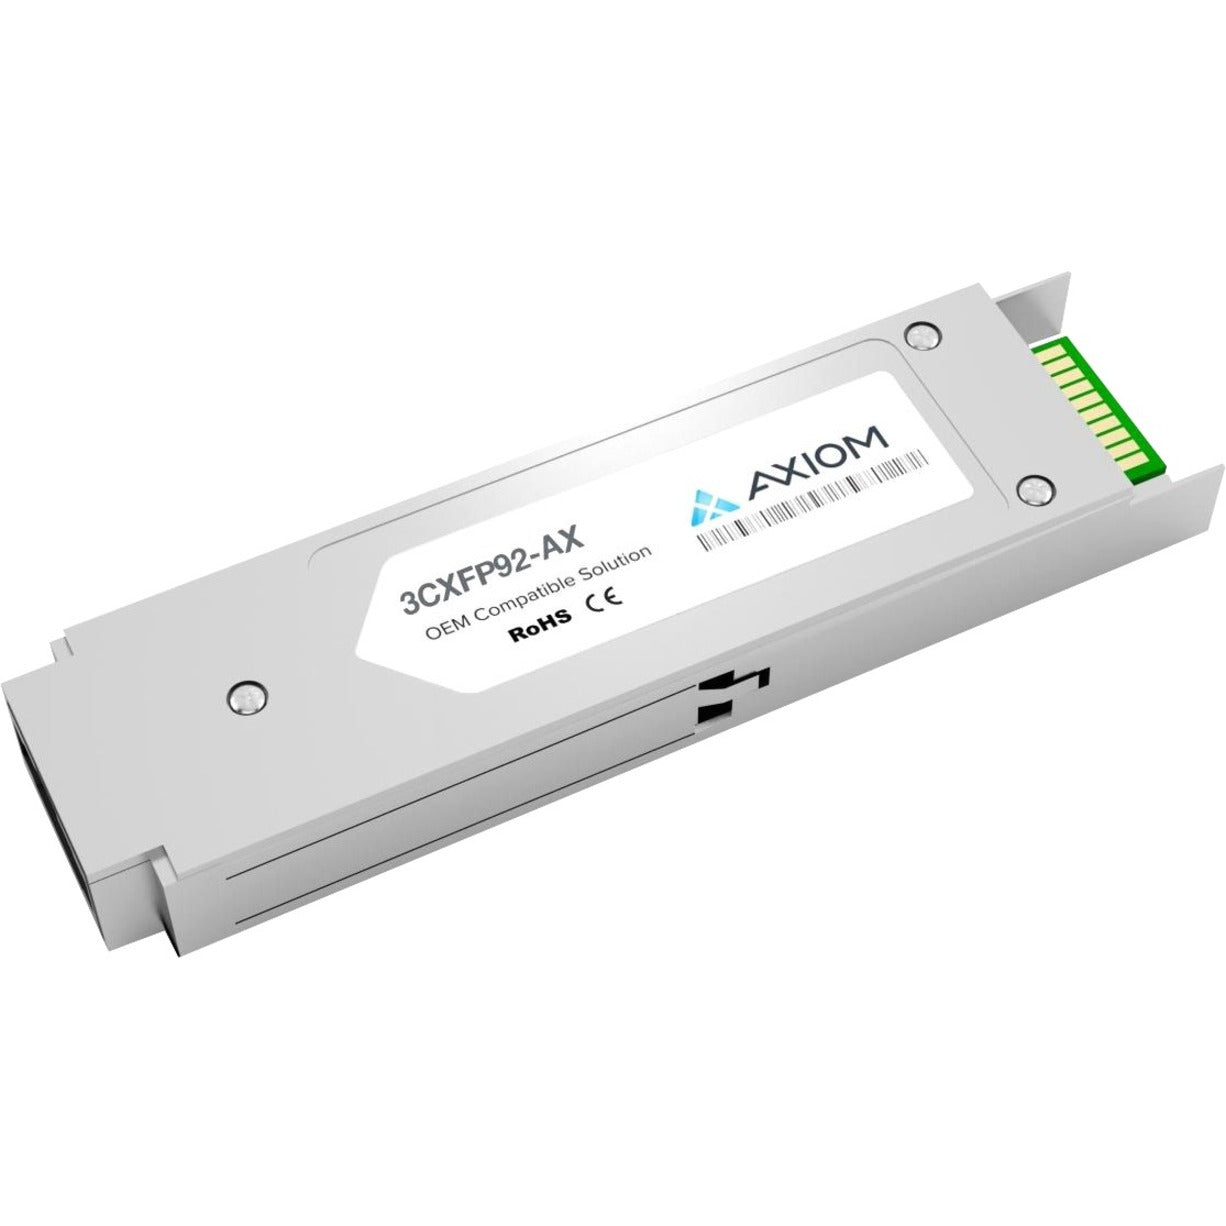 Axiom 3CXFP92-AX 10GBASE-LR XFP Transceiver for 3Com, Single-mode Optical Fiber, 10 Gigabit Ethernet